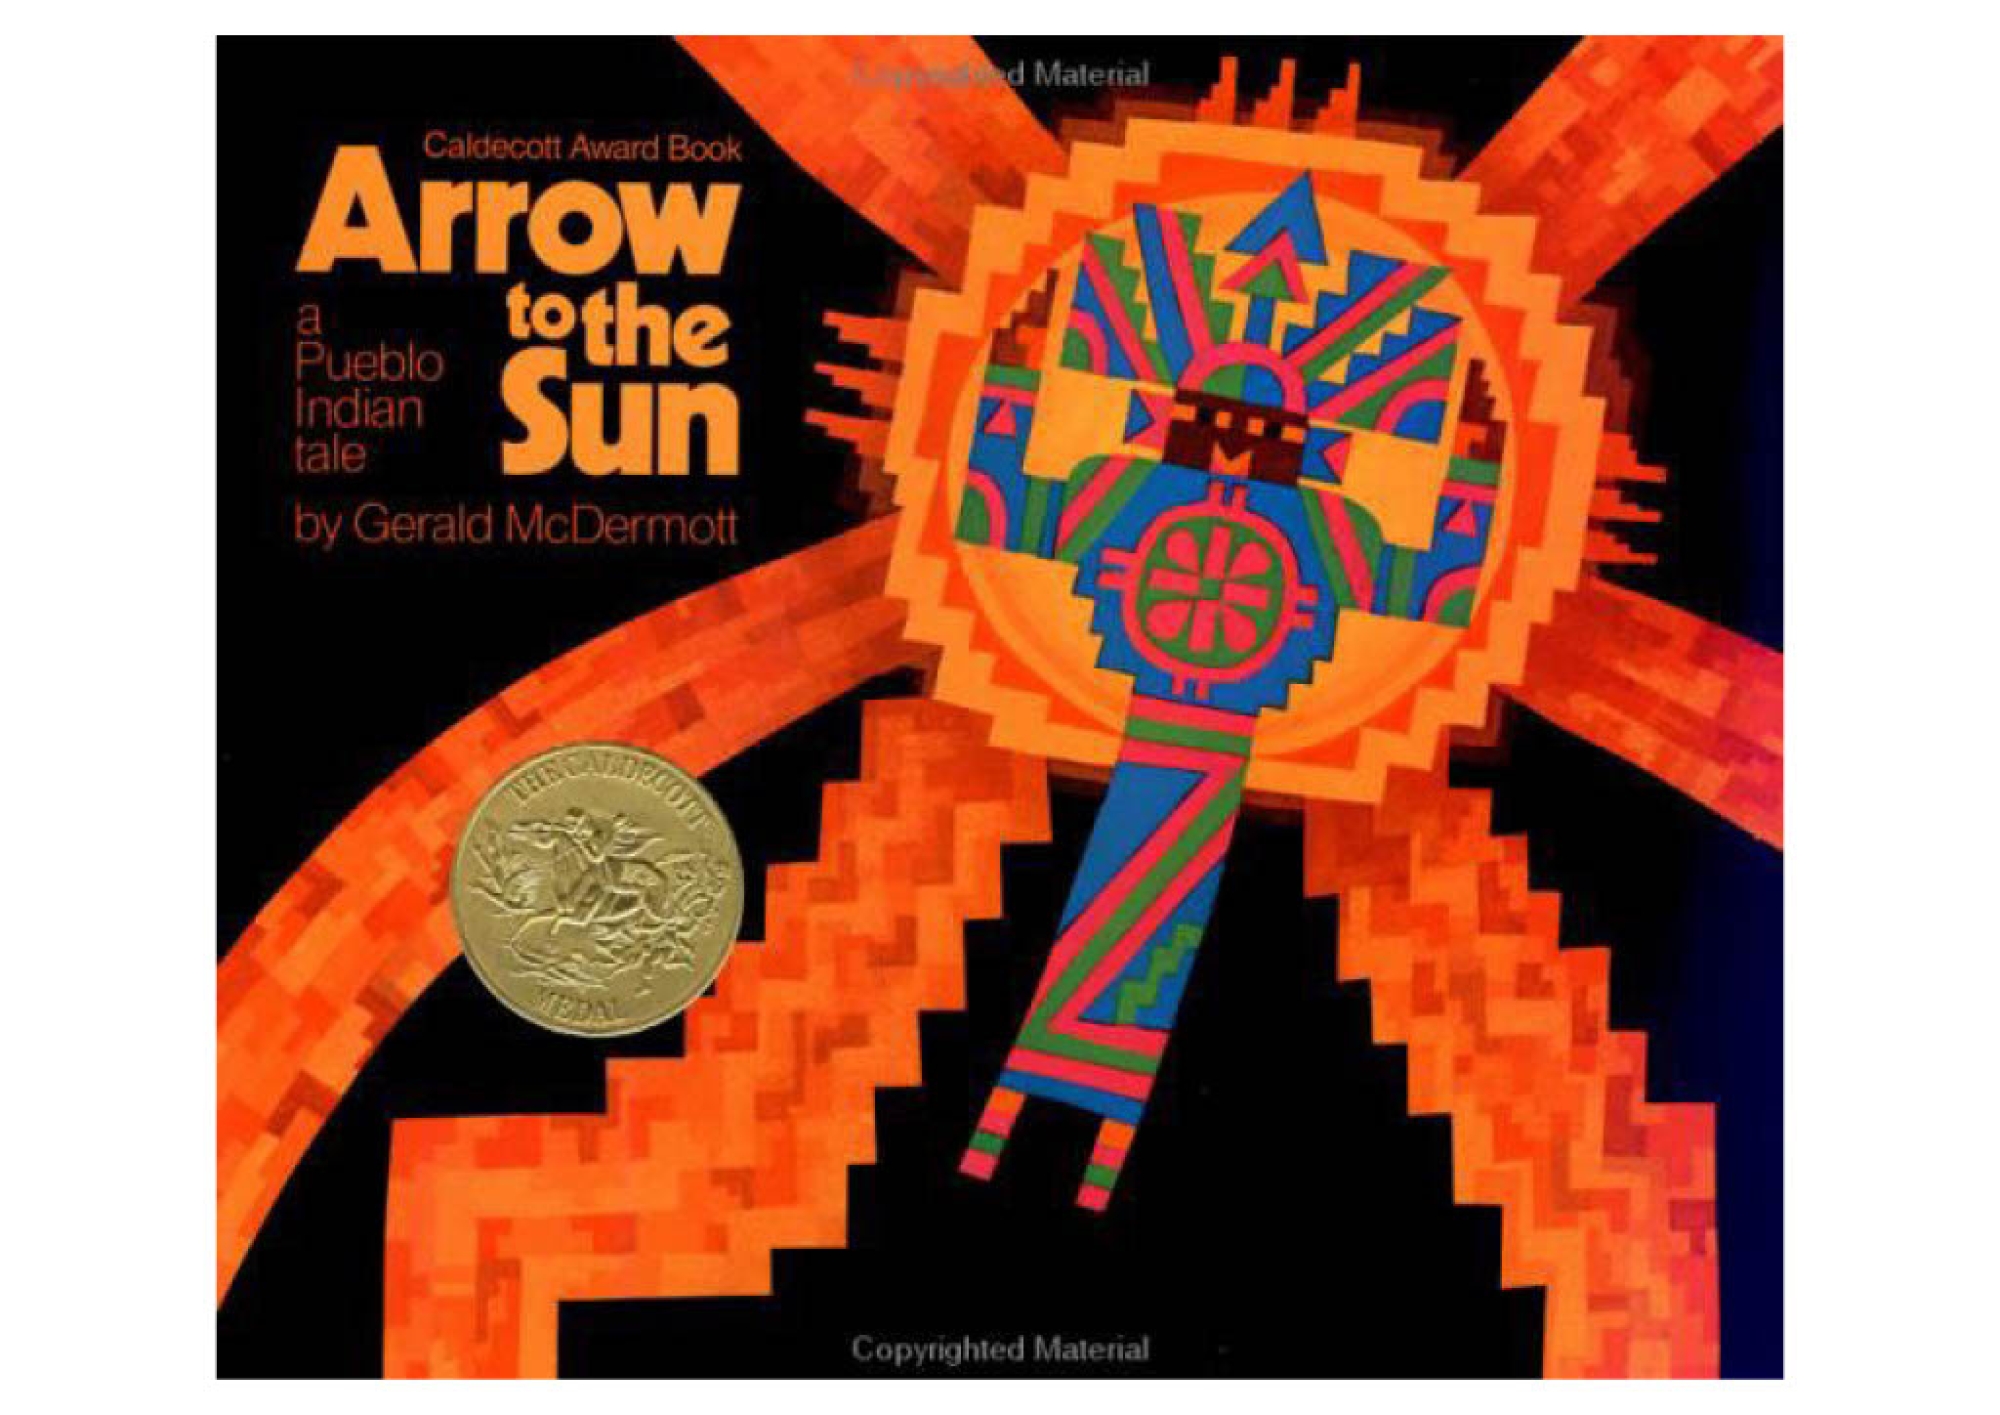 Arrow to the Sun a Pueblo Indian tale